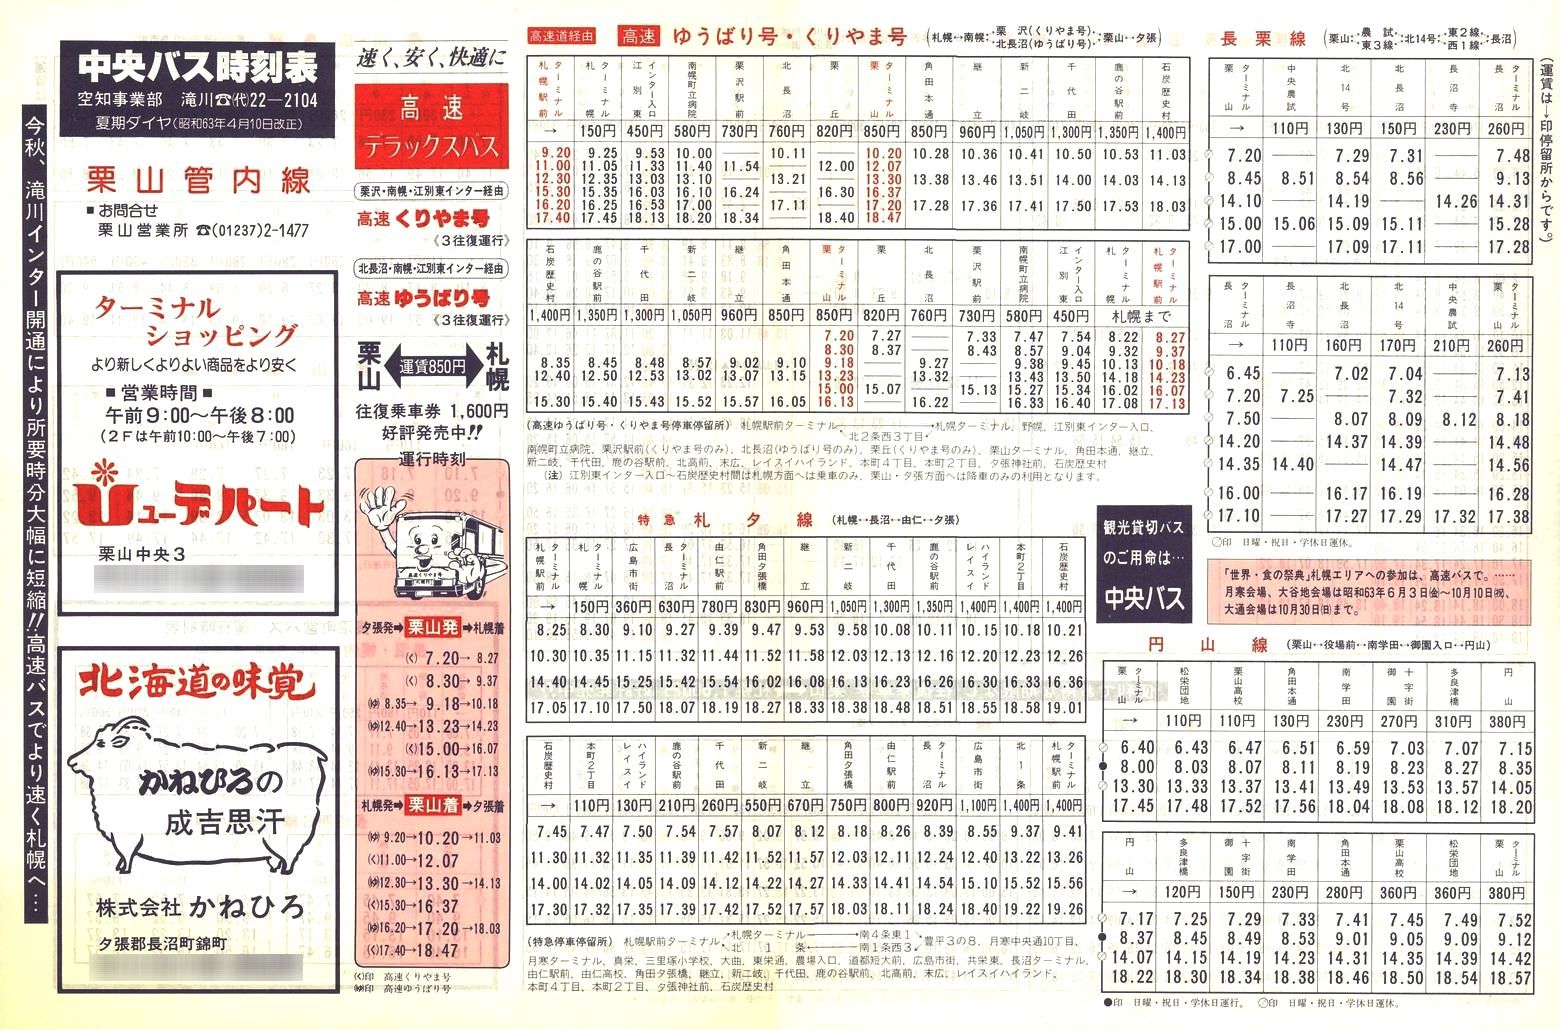 1988-04-10改正_北海道中央バス(空知)_栗山管内線時刻表表面